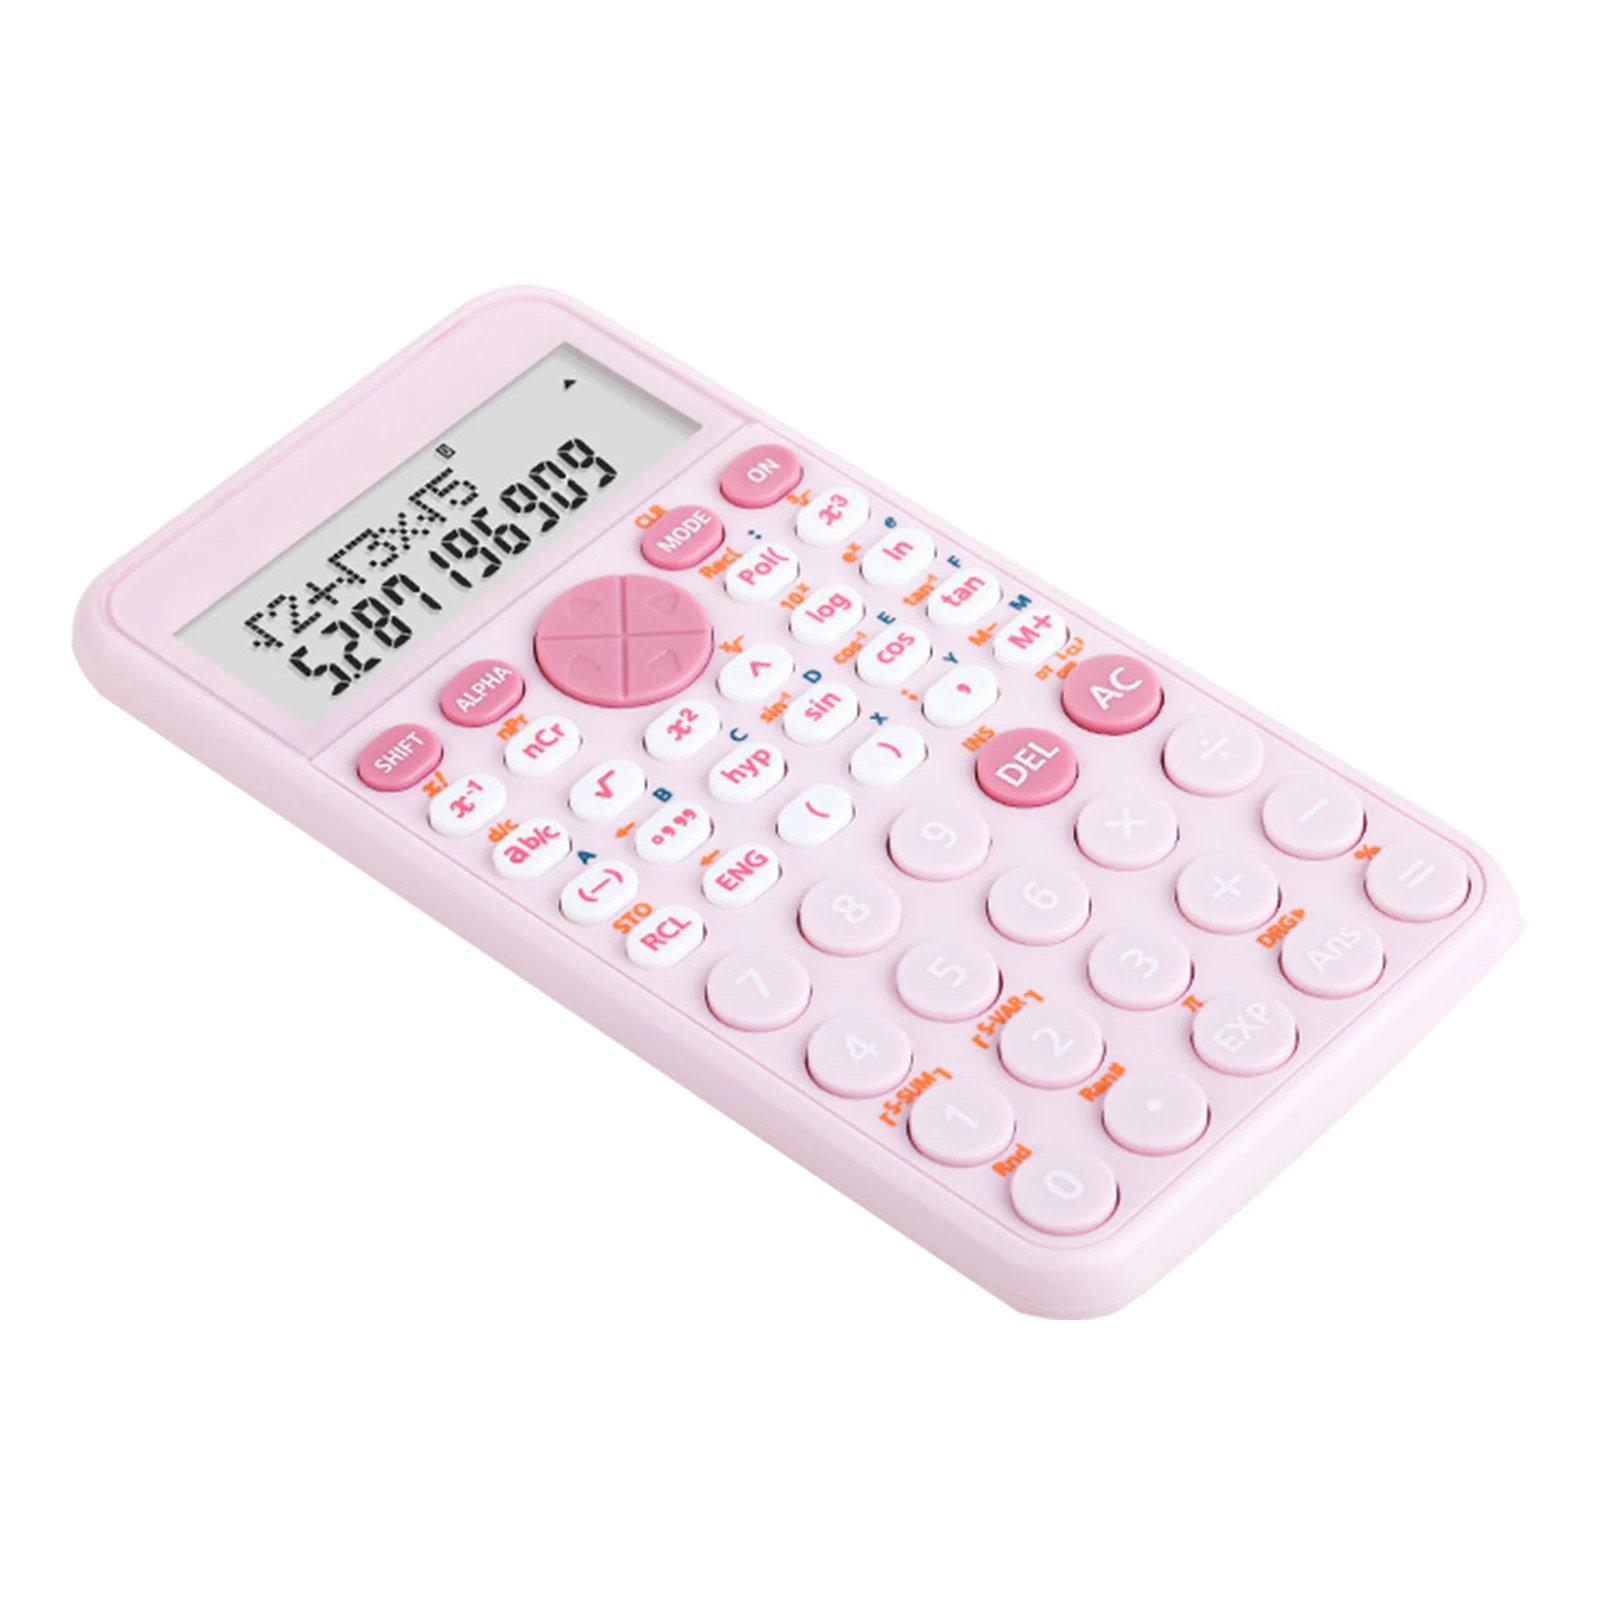 Calcolatrice scientifica calcolatrici per studenti blu bianco rosa per